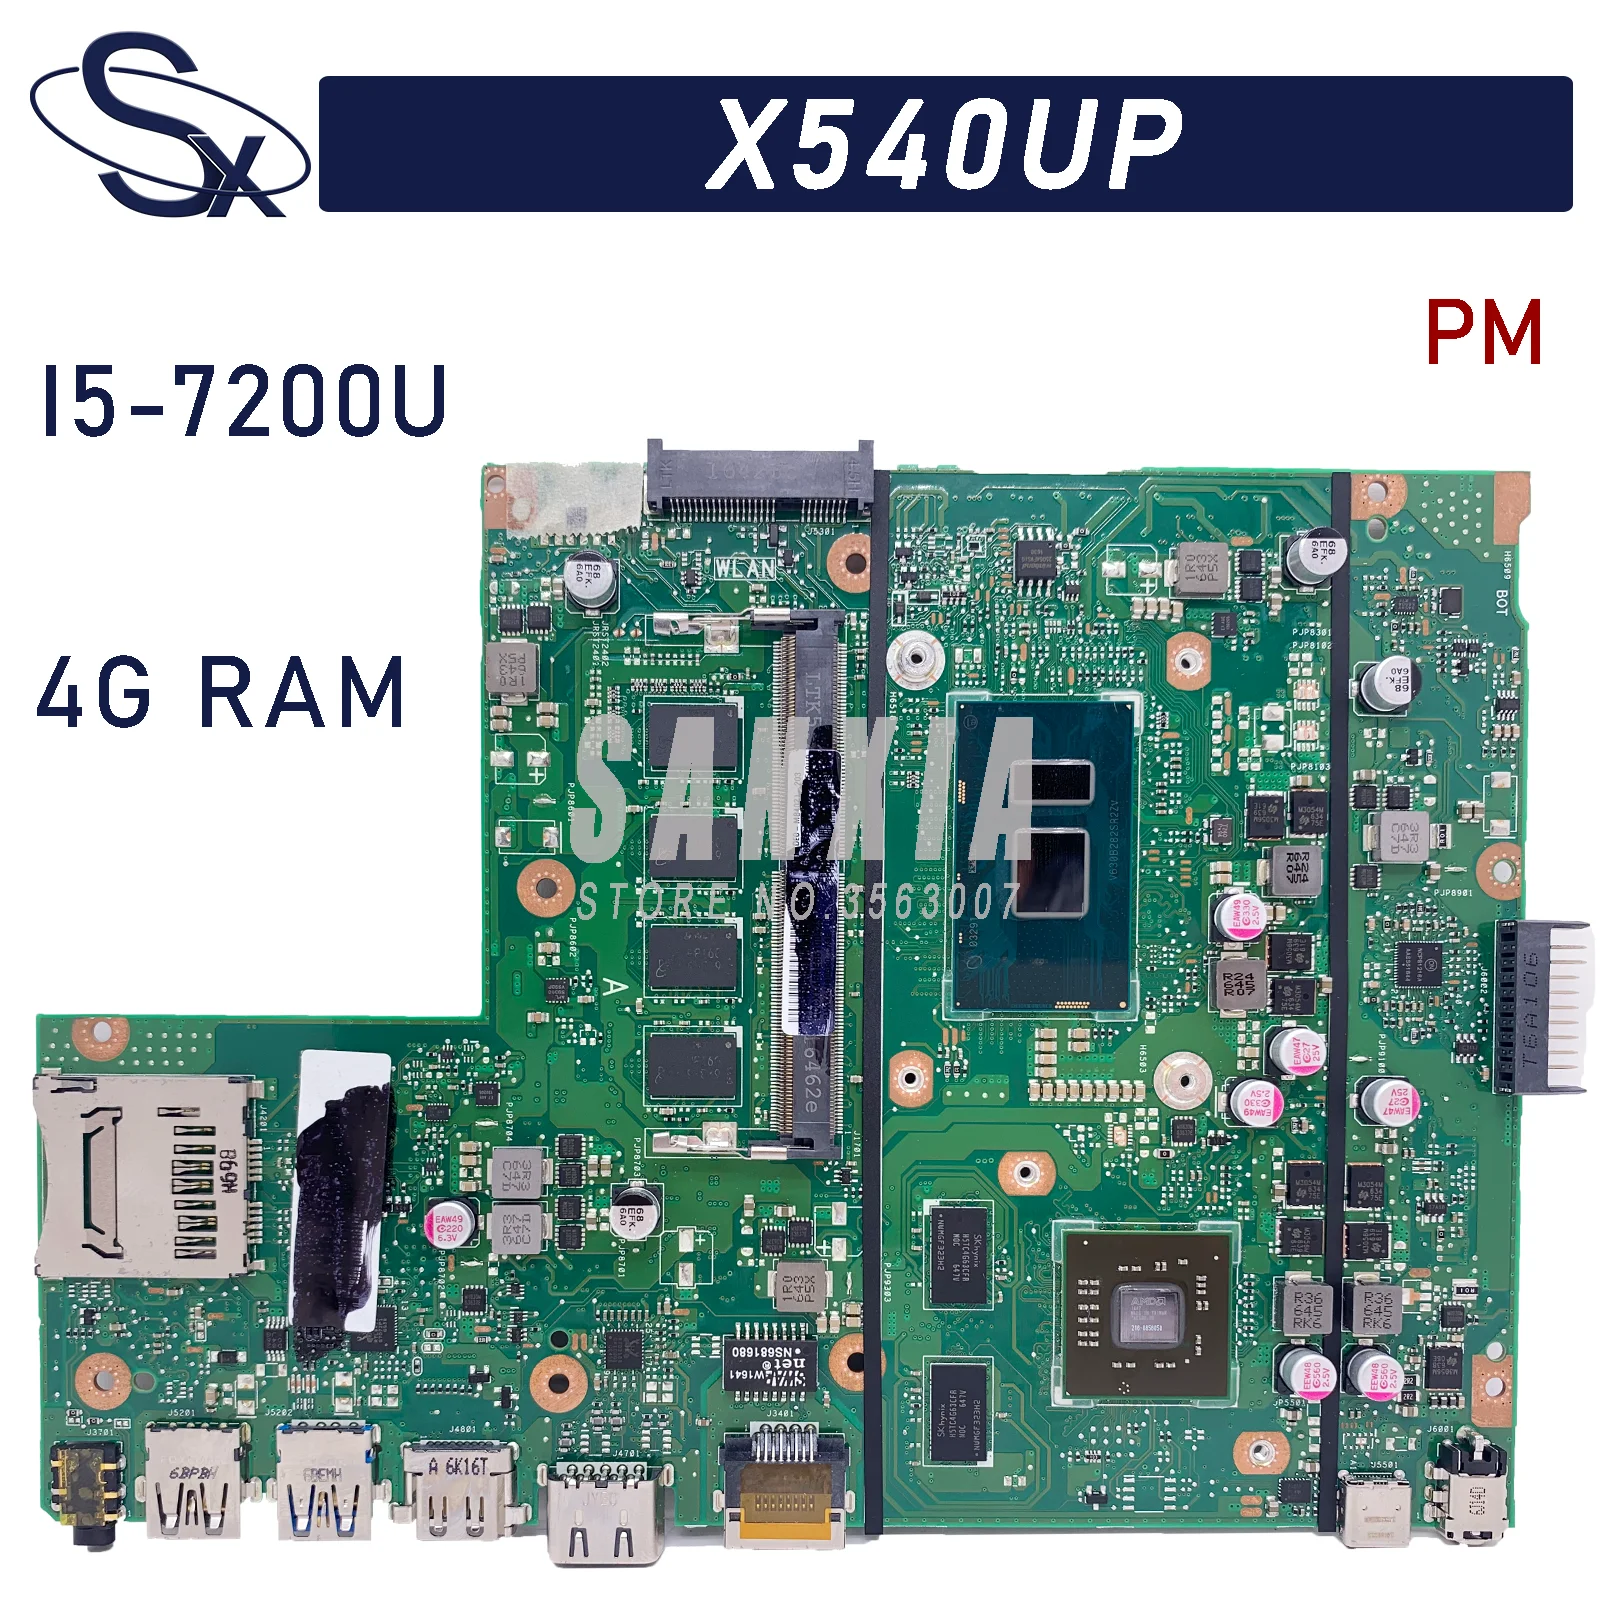 

KEFU X540UP Laptop motherboard for ASUS VivoBook R540UP R540U X540U F540U original mainboard 4GB-RAM I5-7200U R5-M420 100% test